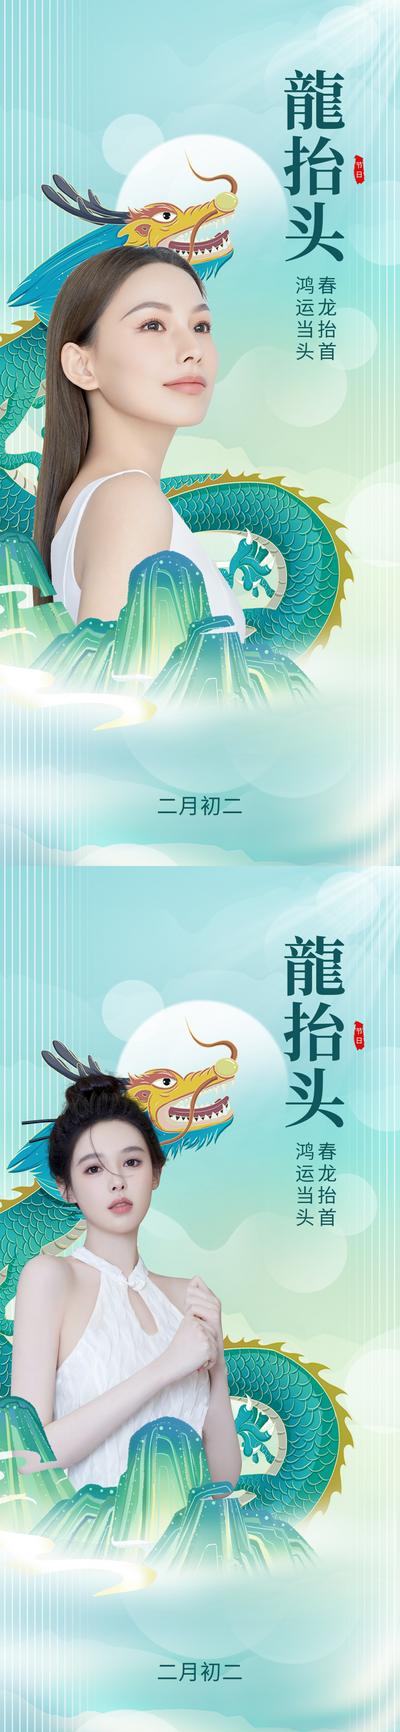 南门网 海报 整形 医美  中国传统节日  二月二 龙抬头 龙腾 插画 系列